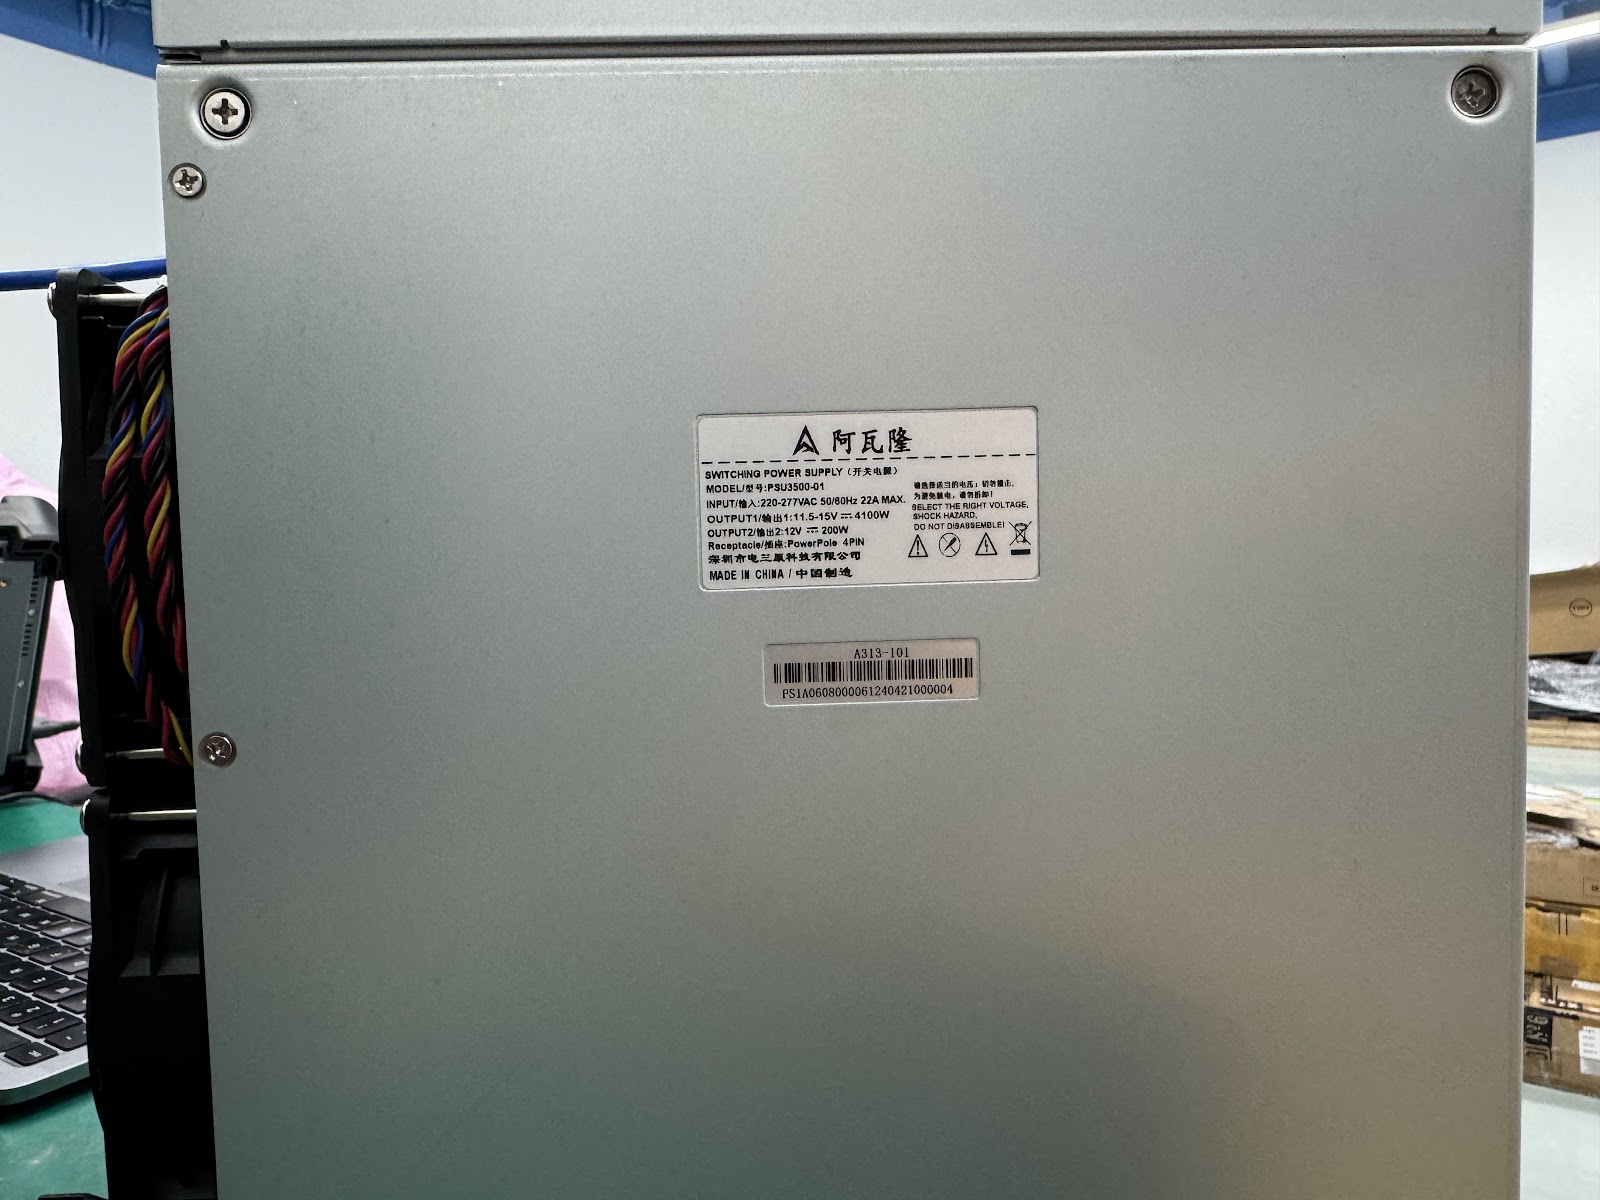 Avalon A1566 PSU specifications